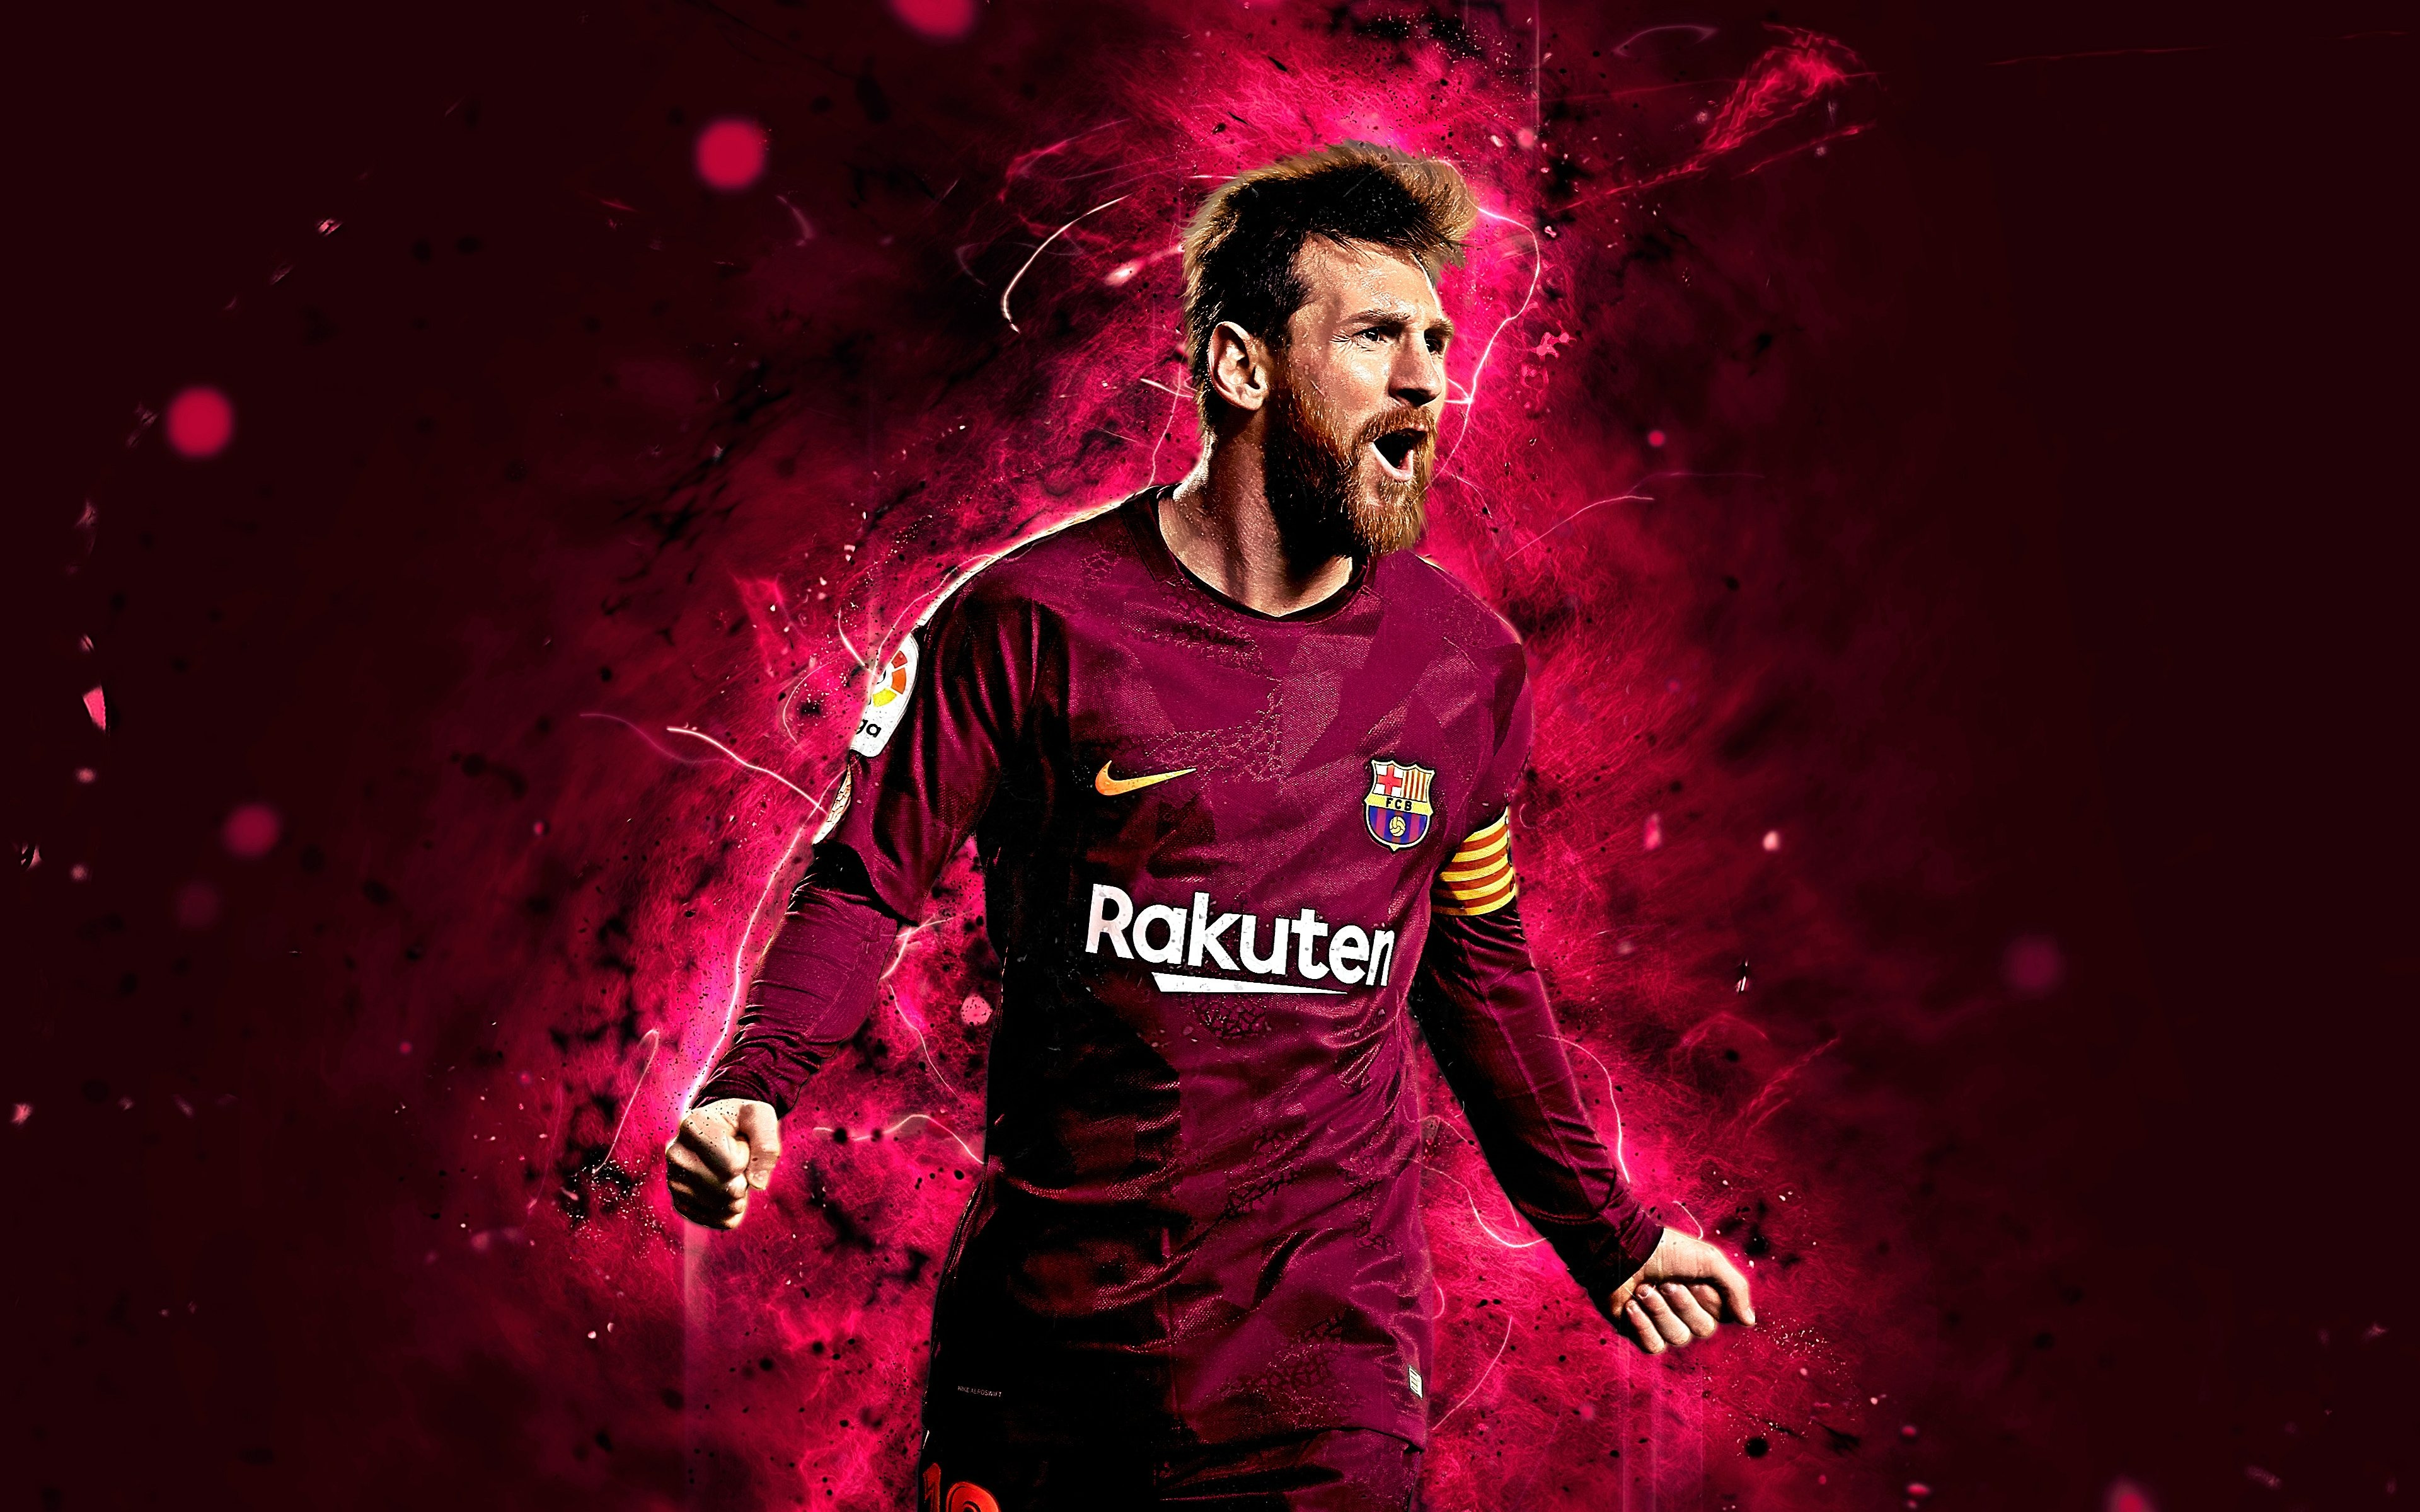 Hình nền Messi đầy ấn tượng và sáng tạo sẽ đem lại cho bạn cảm giác tràn đầy năng lượng và khát khao chiến đấu. Siêu sao của Barca luôn là một nguồn cảm hứng lớn cho những fan hâm mộ. Hãy tải ngay những hình nền Messi độc đáo và đầy sức sống này để làm mới màn hình điện thoại của bạn!